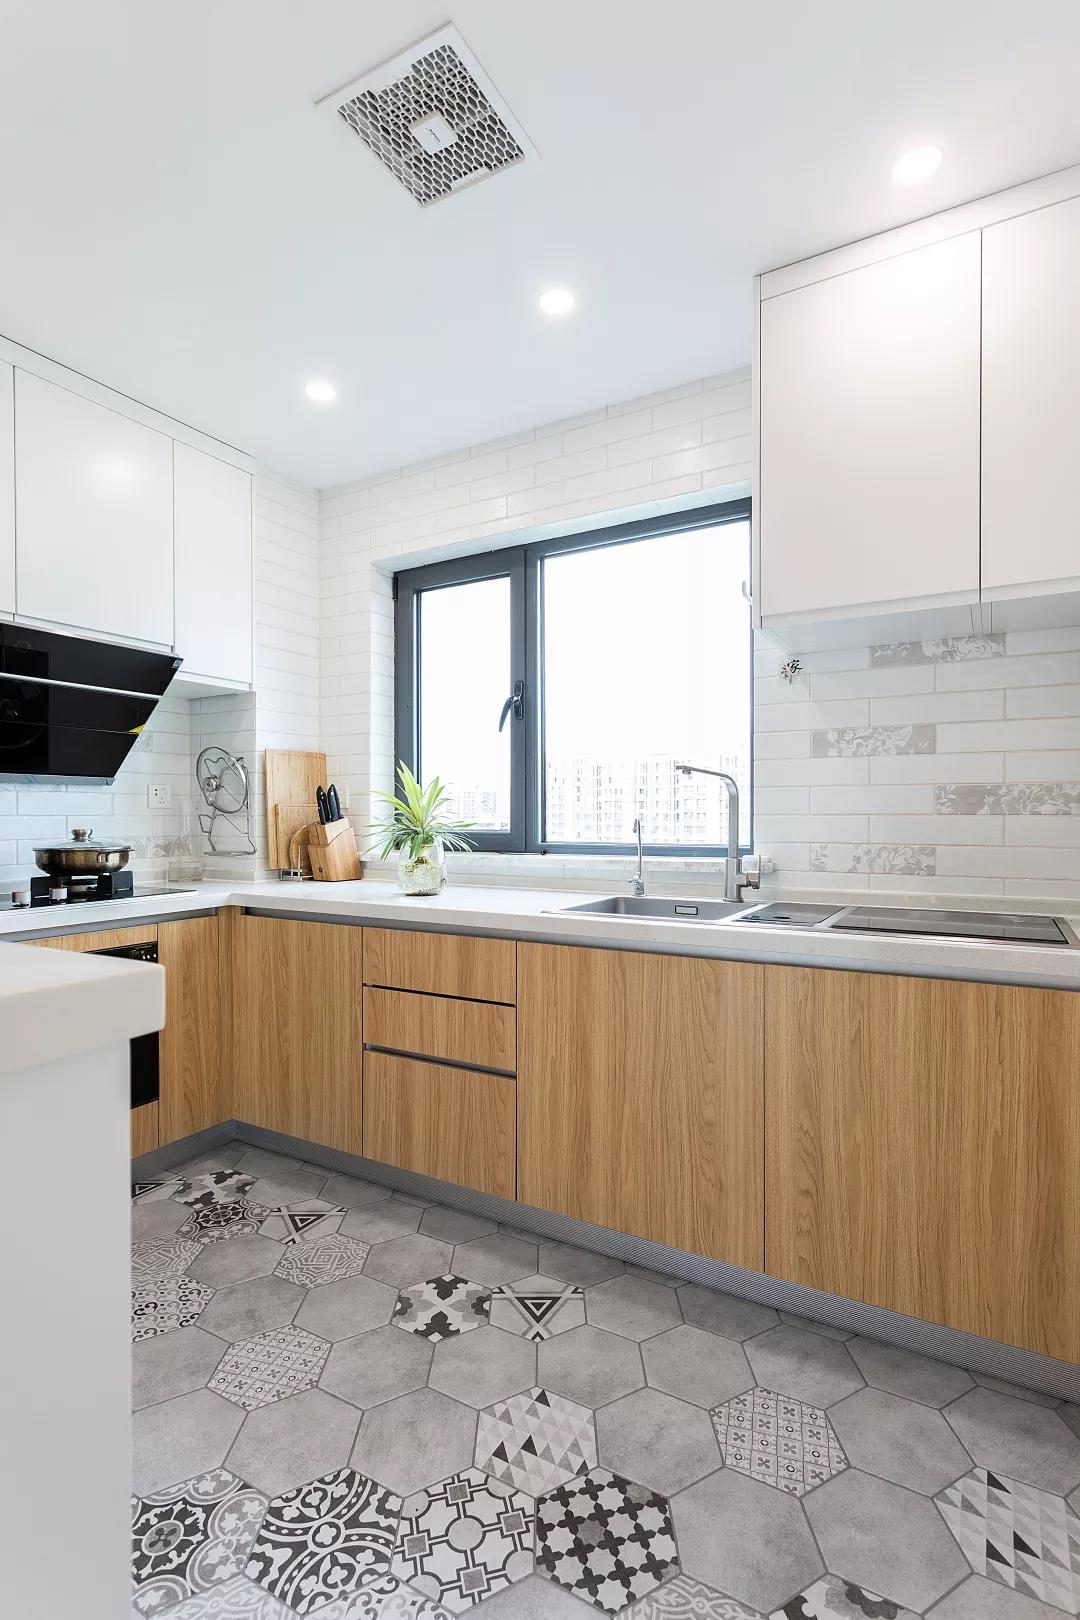 整个厨房空间的天花采取吊平顶的设计，橱柜选用木色橱柜，均匀明亮的照明设计提升温馨感。